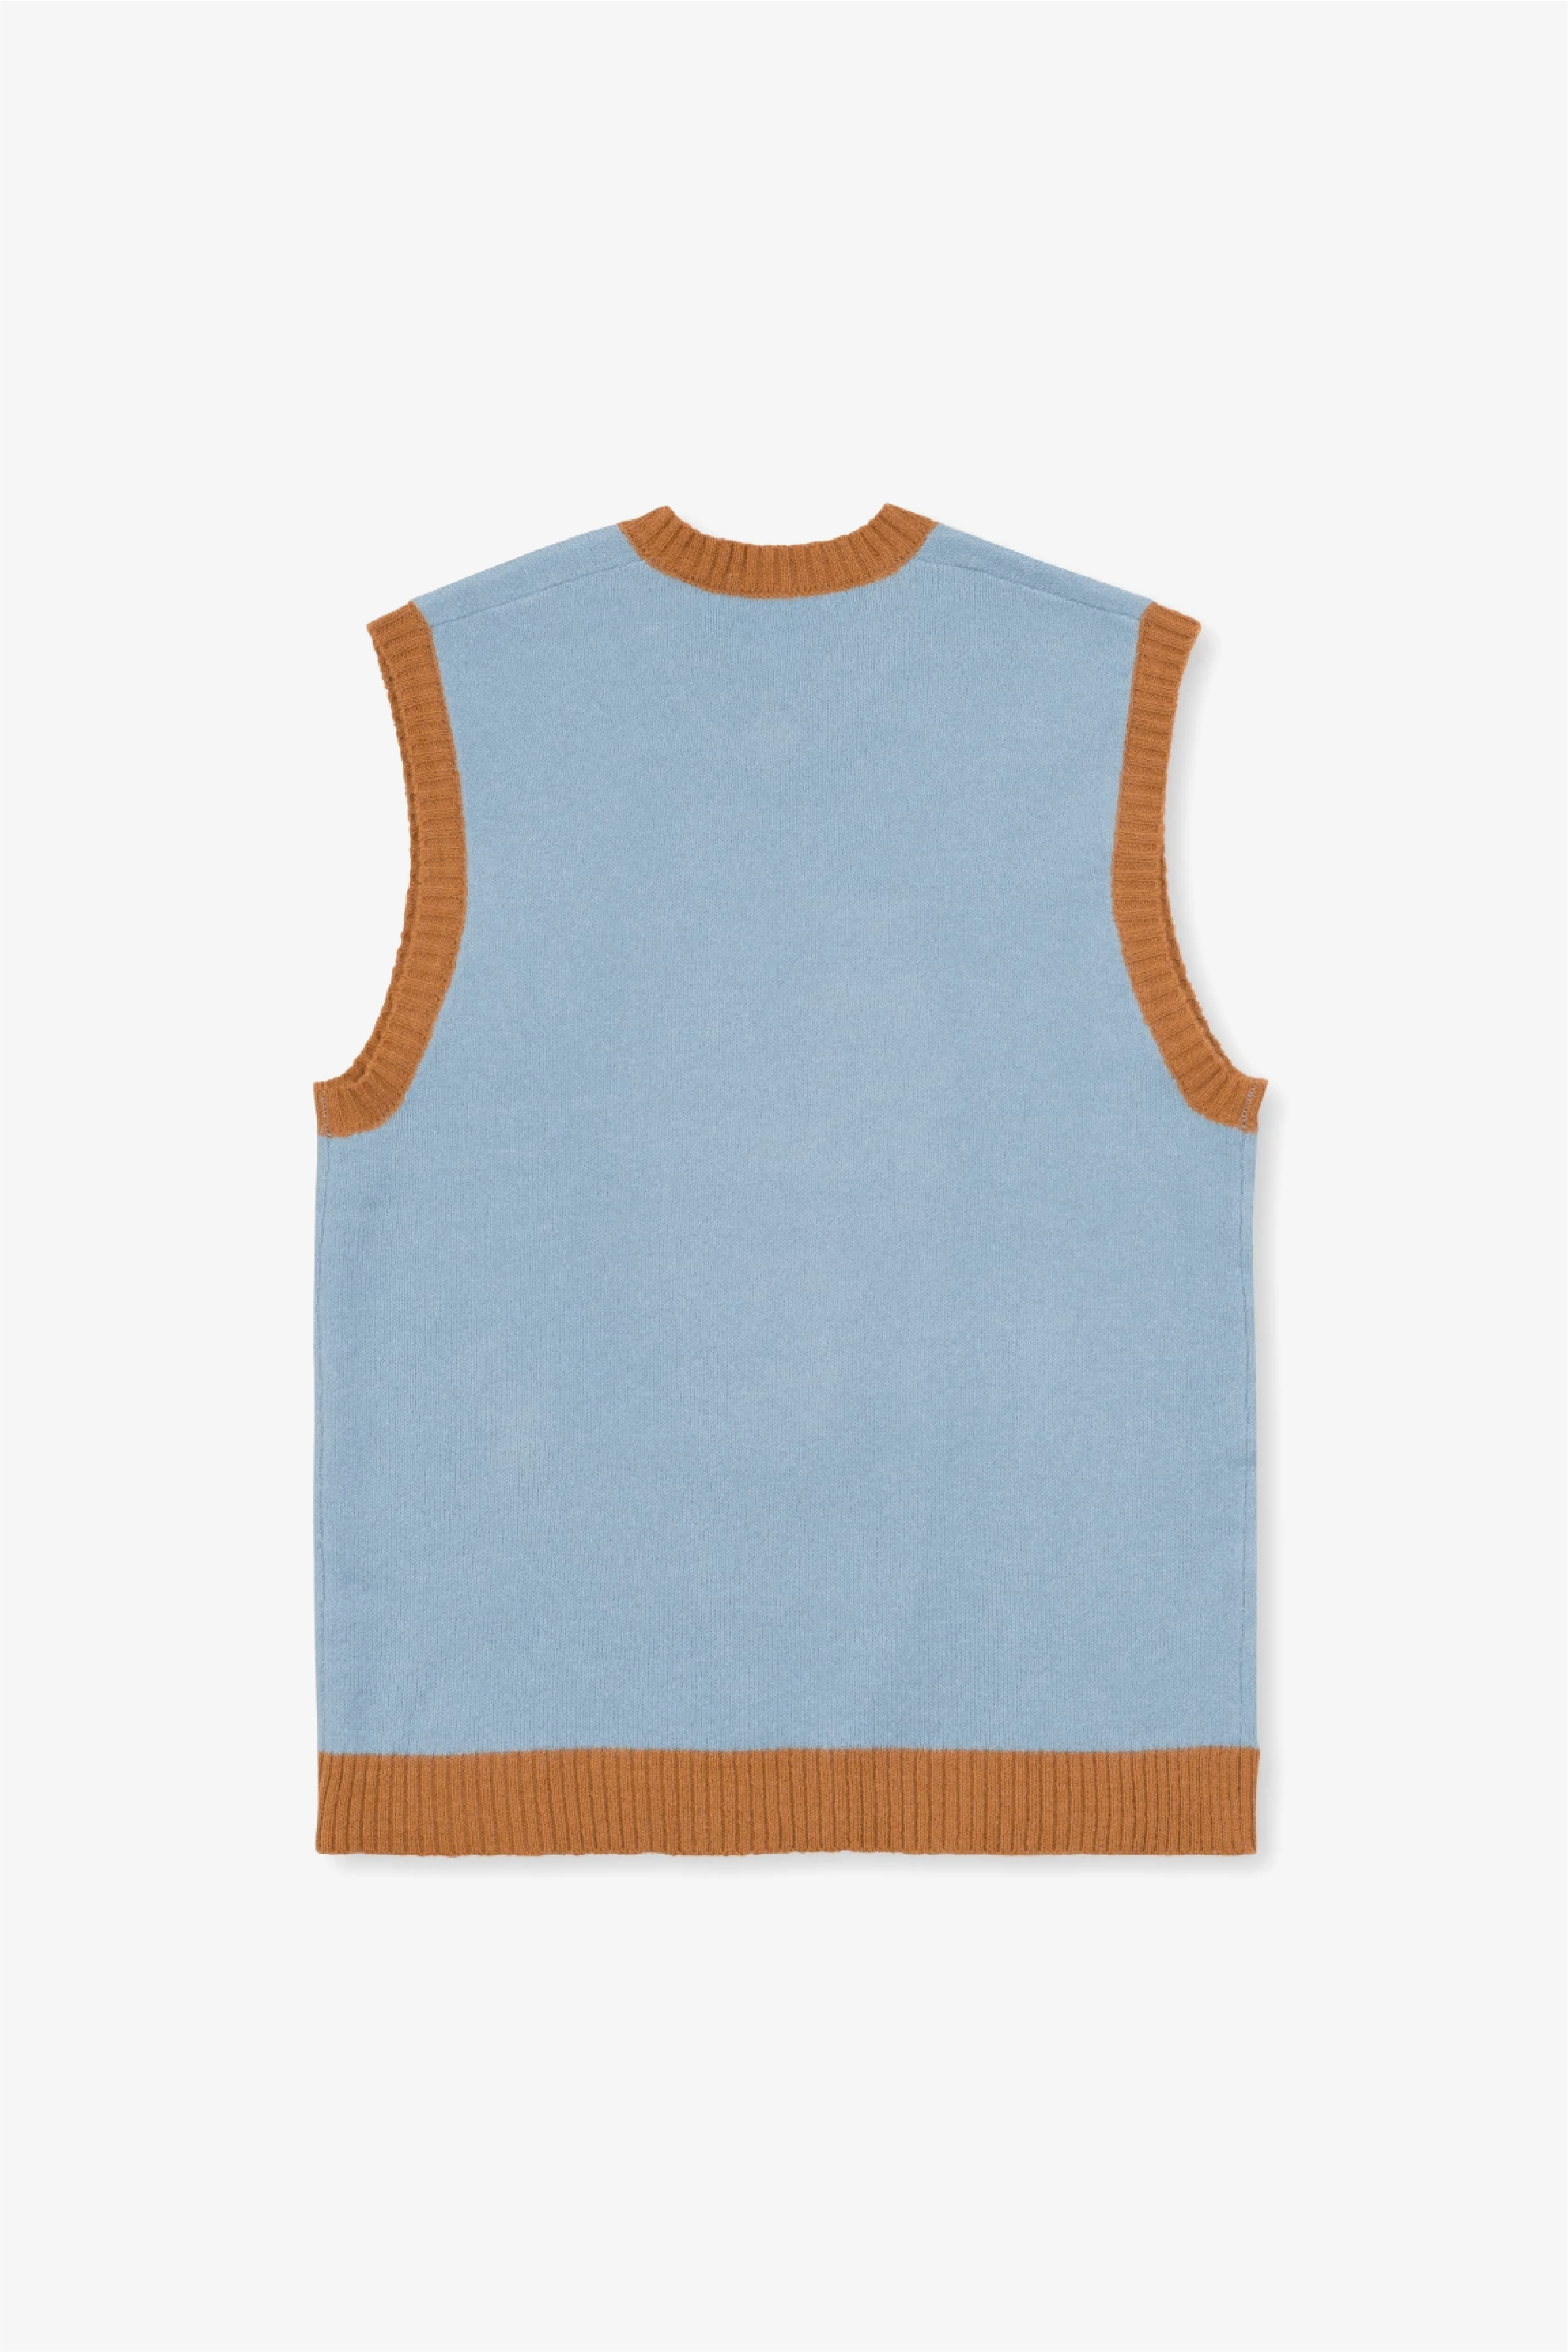 Selectshop FRAME - BRAIN DEAD Kitty Cat Sweater Vest Sweats-knits Dubai